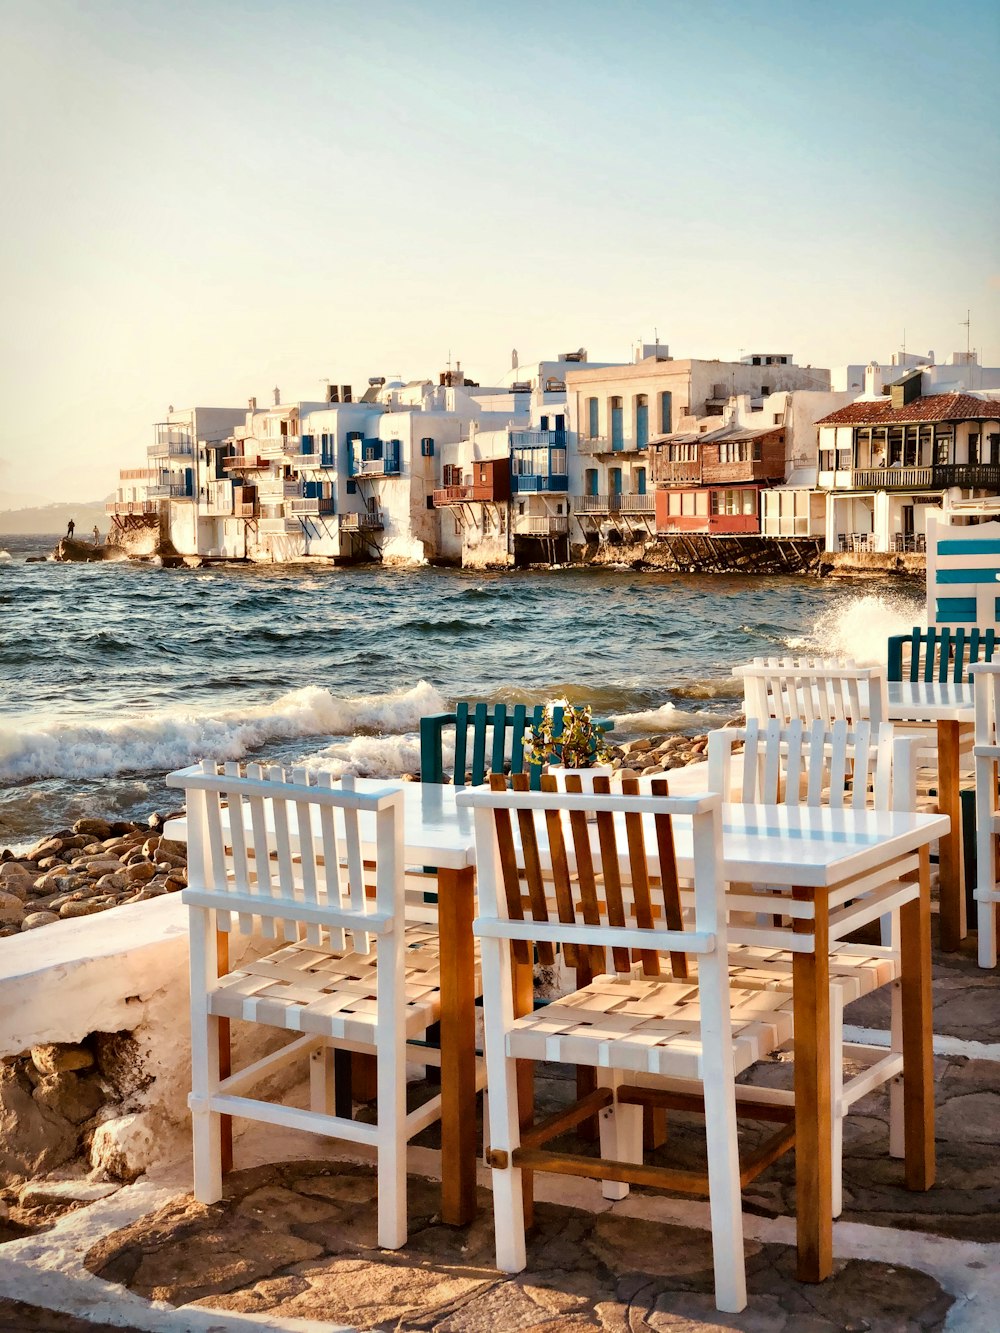 昼間は海岸に茶色の木製の椅子